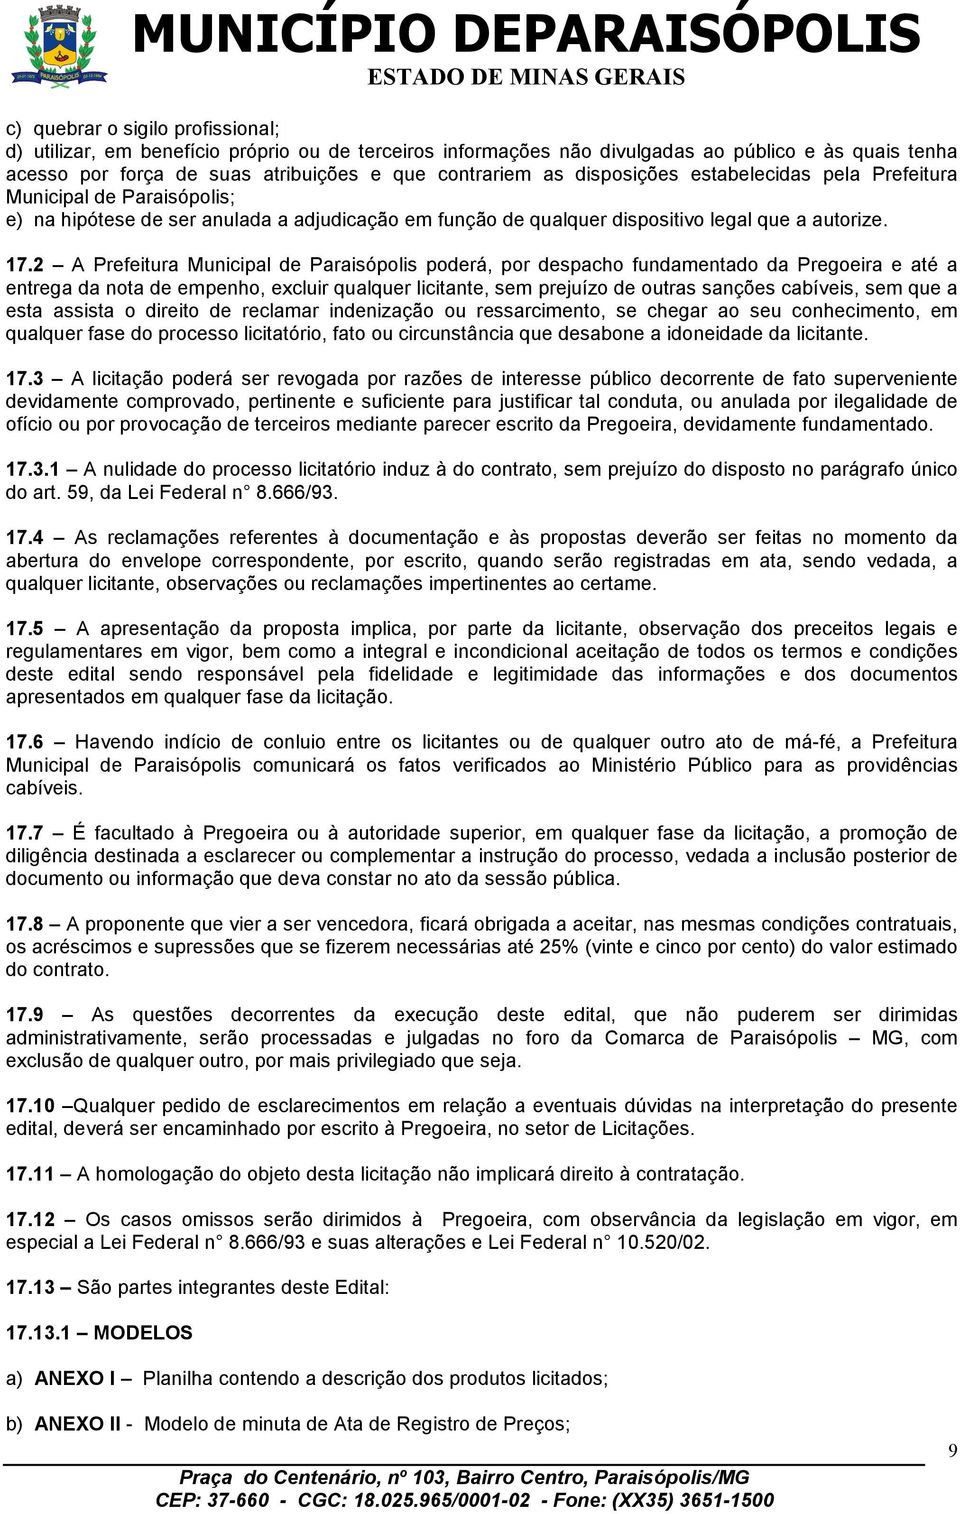 2 A Prefeitura Municipal de Paraisópolis poderá, por despacho fundamentado da Pregoeira e até a entrega da nota de empenho, excluir qualquer licitante, sem prejuízo de outras sanções cabíveis, sem